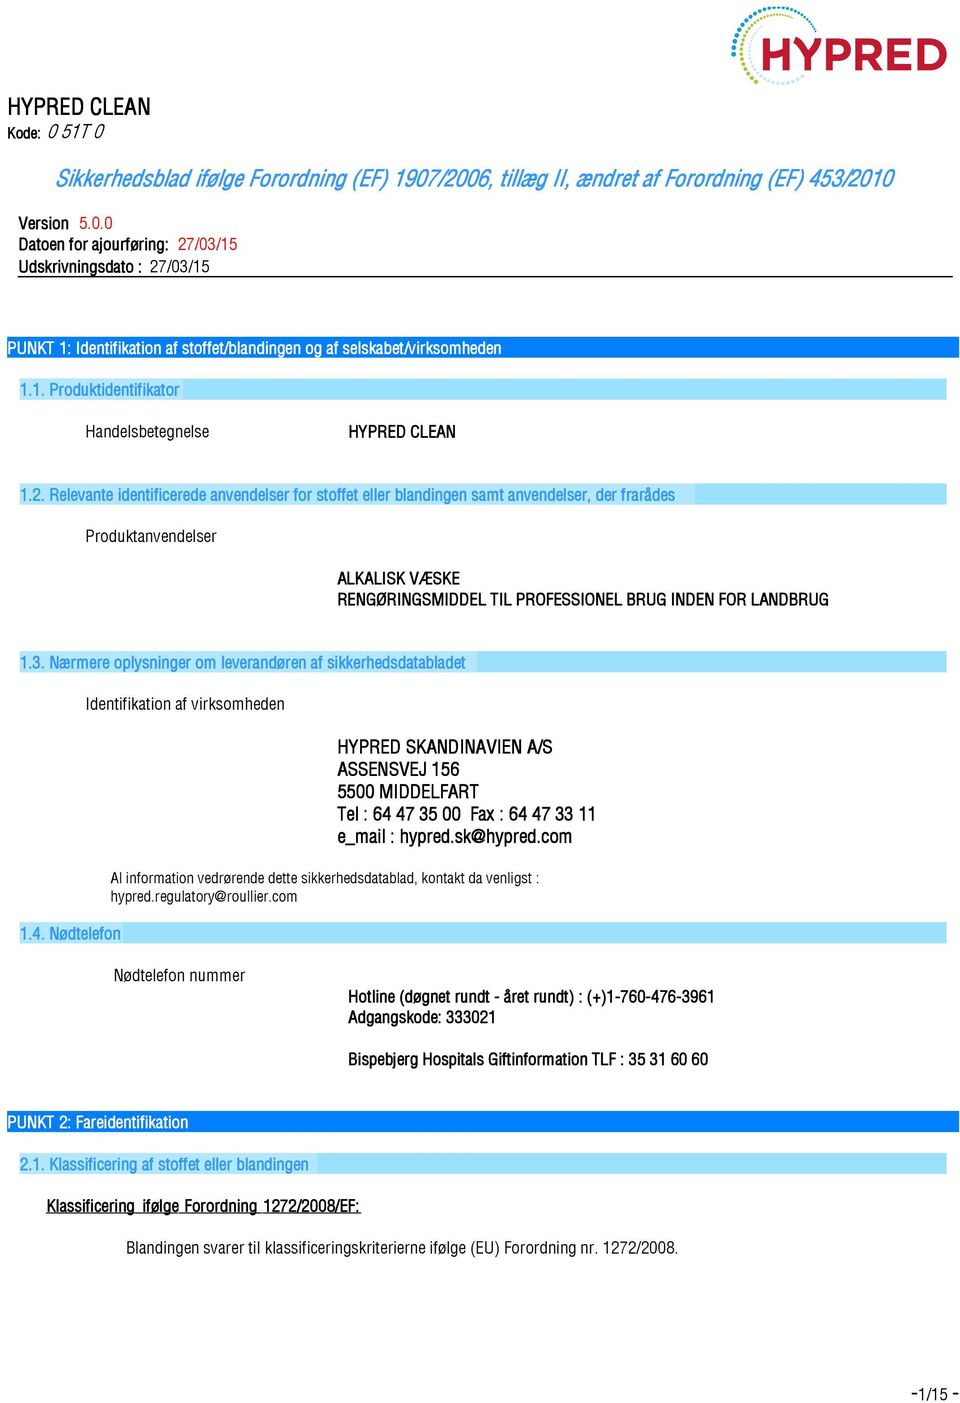 Nærmere oplysninger om leverandøren af t 1.4. Nødtelefon Identifikation af virksomheden HYPRED SKANDINAVIEN A/S ASSENSVEJ 156 5500 MIDDELFART Tel : 64 47 35 00 Fax : 64 47 33 11 e_mail : hypred.